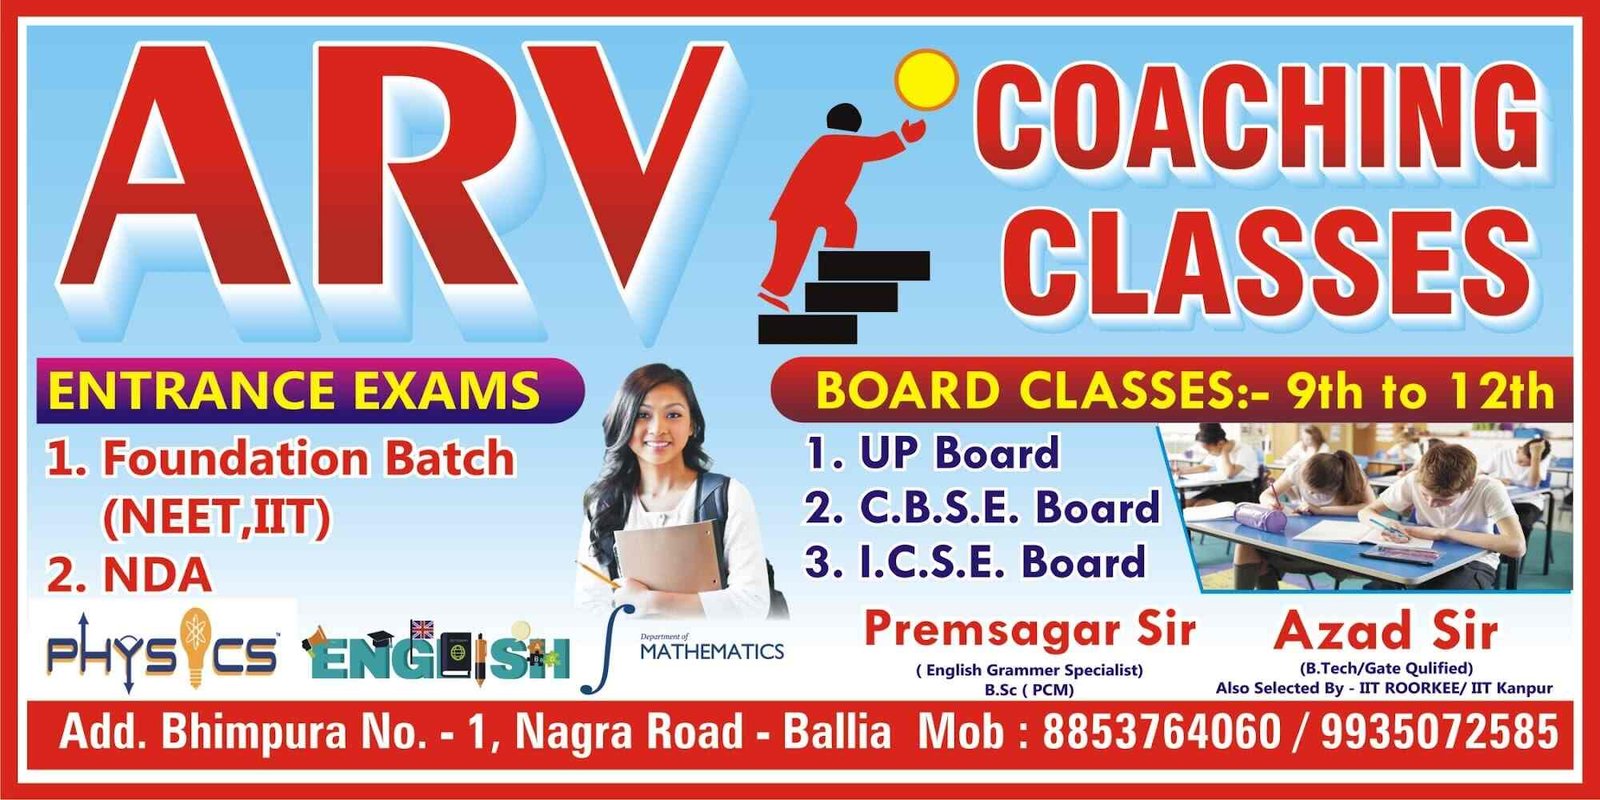 ARV Coaching Classes